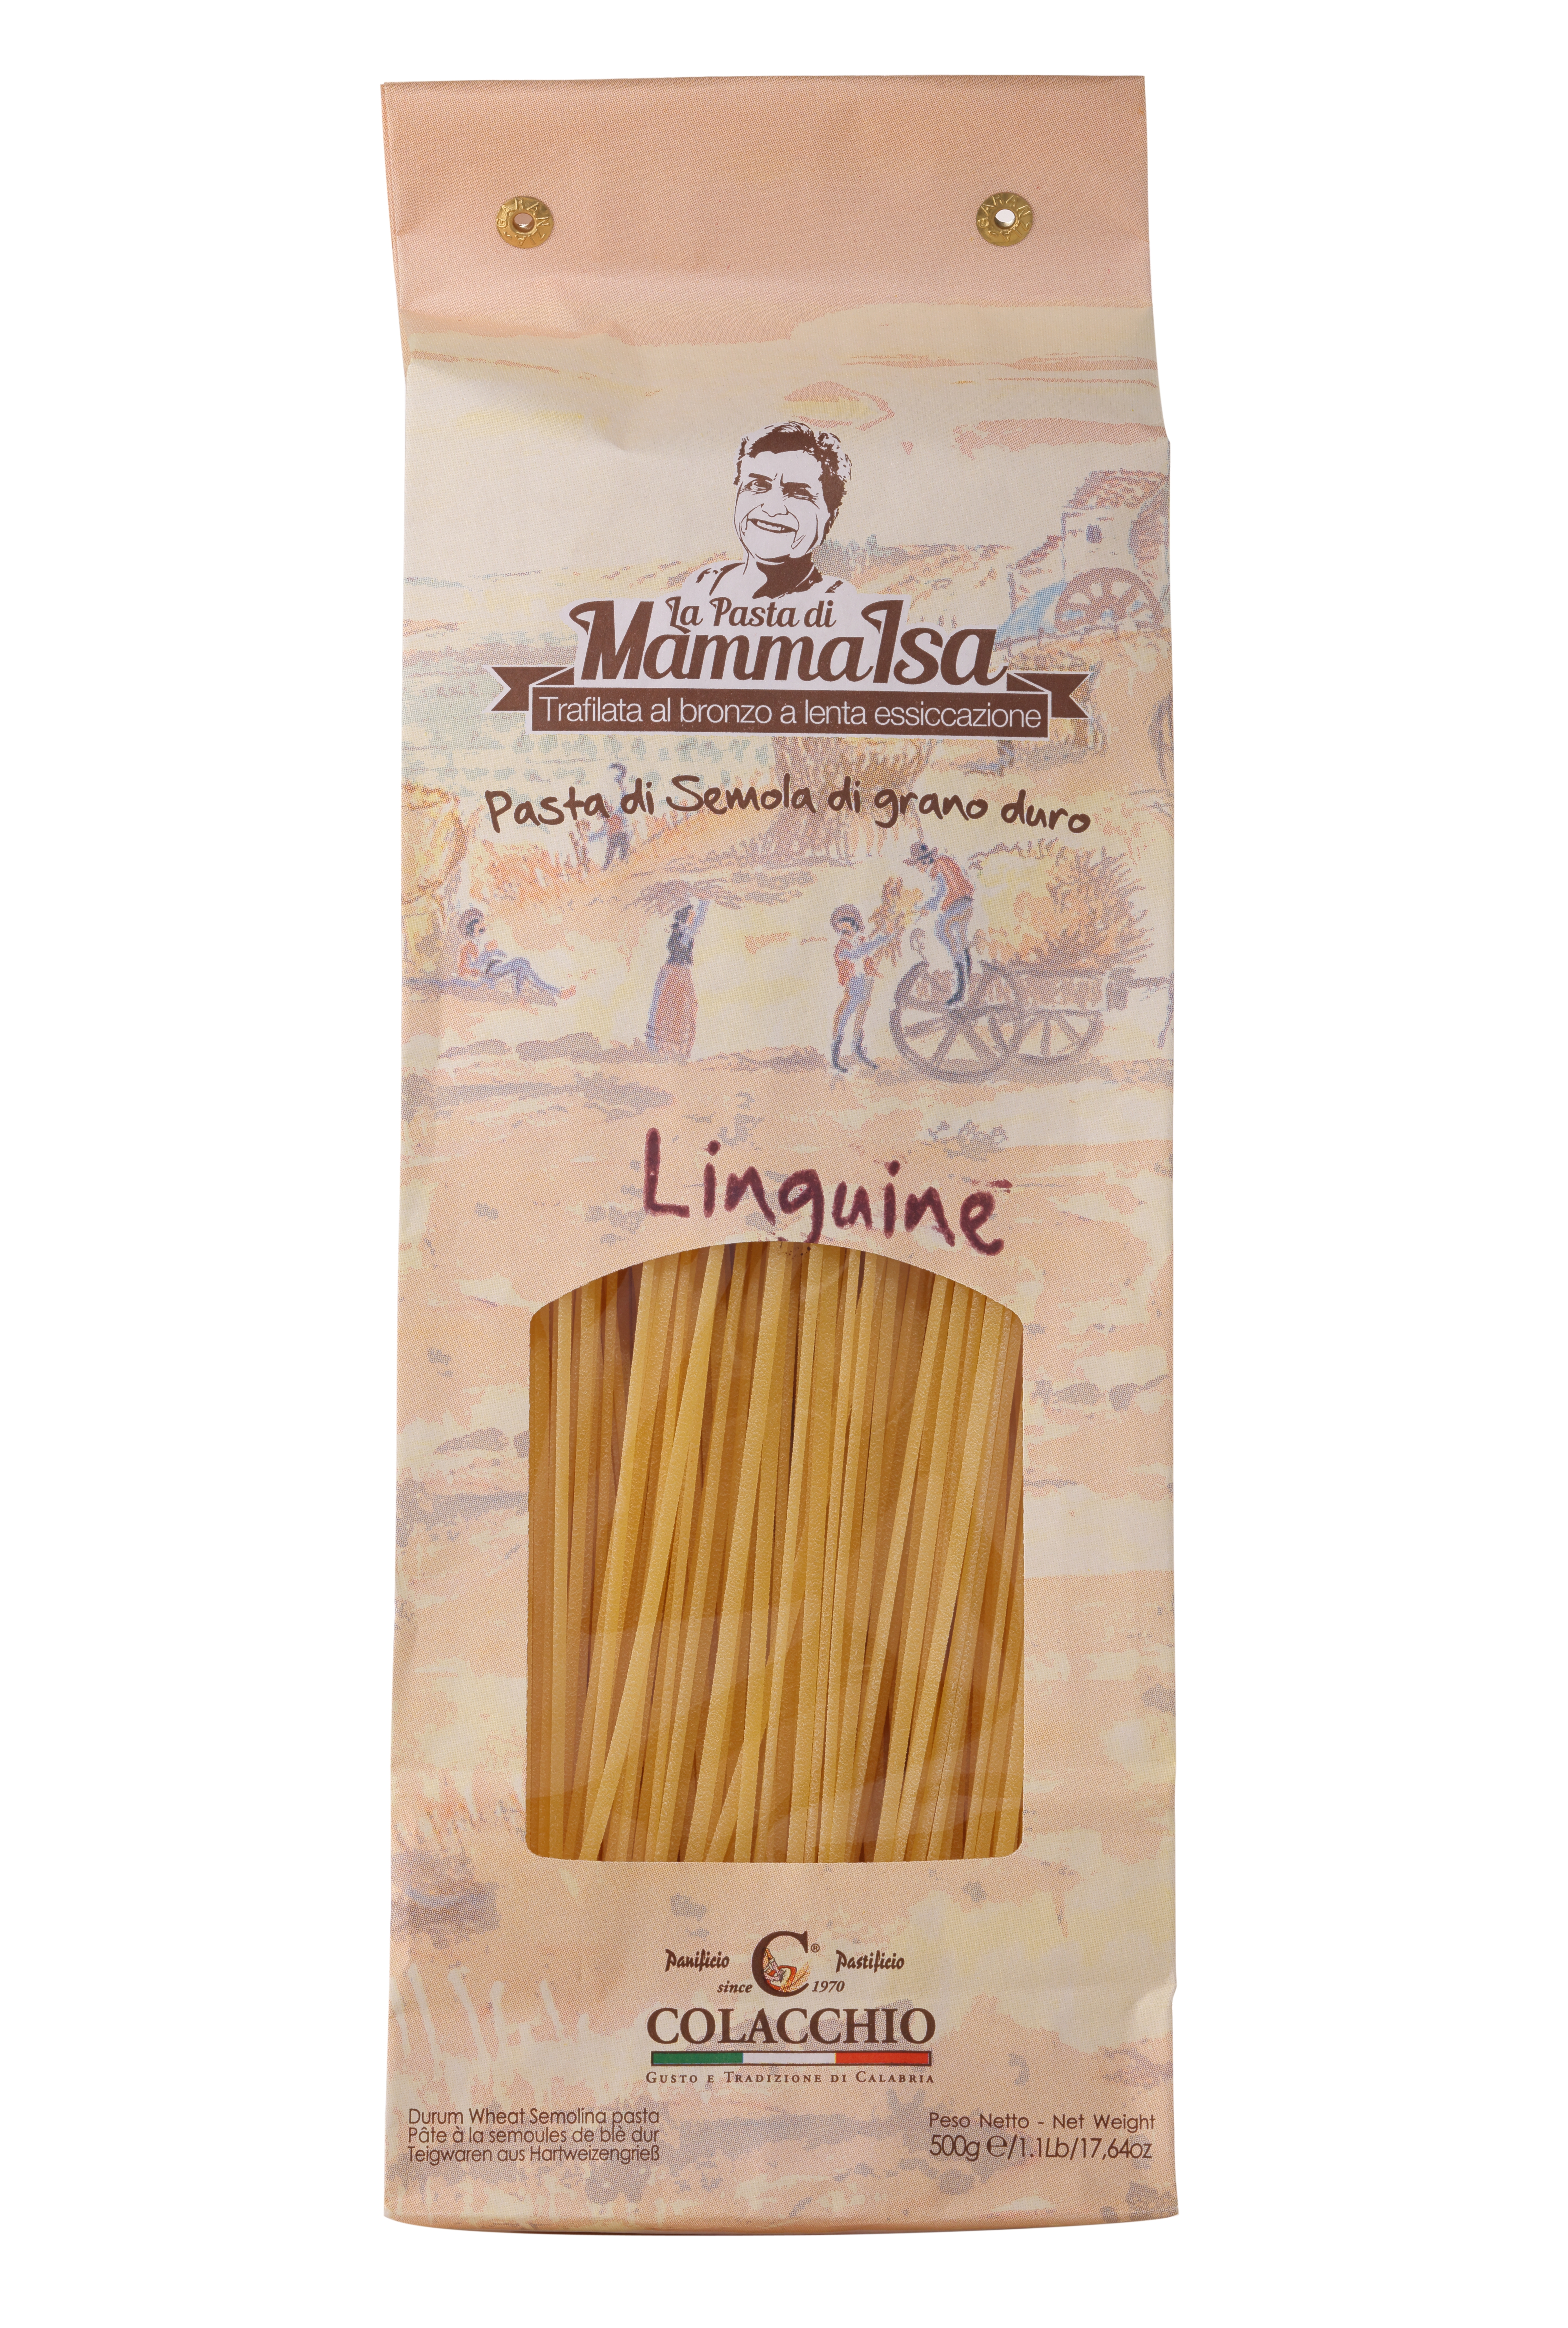 Colacchio, "Linguine" Pasta, 500g